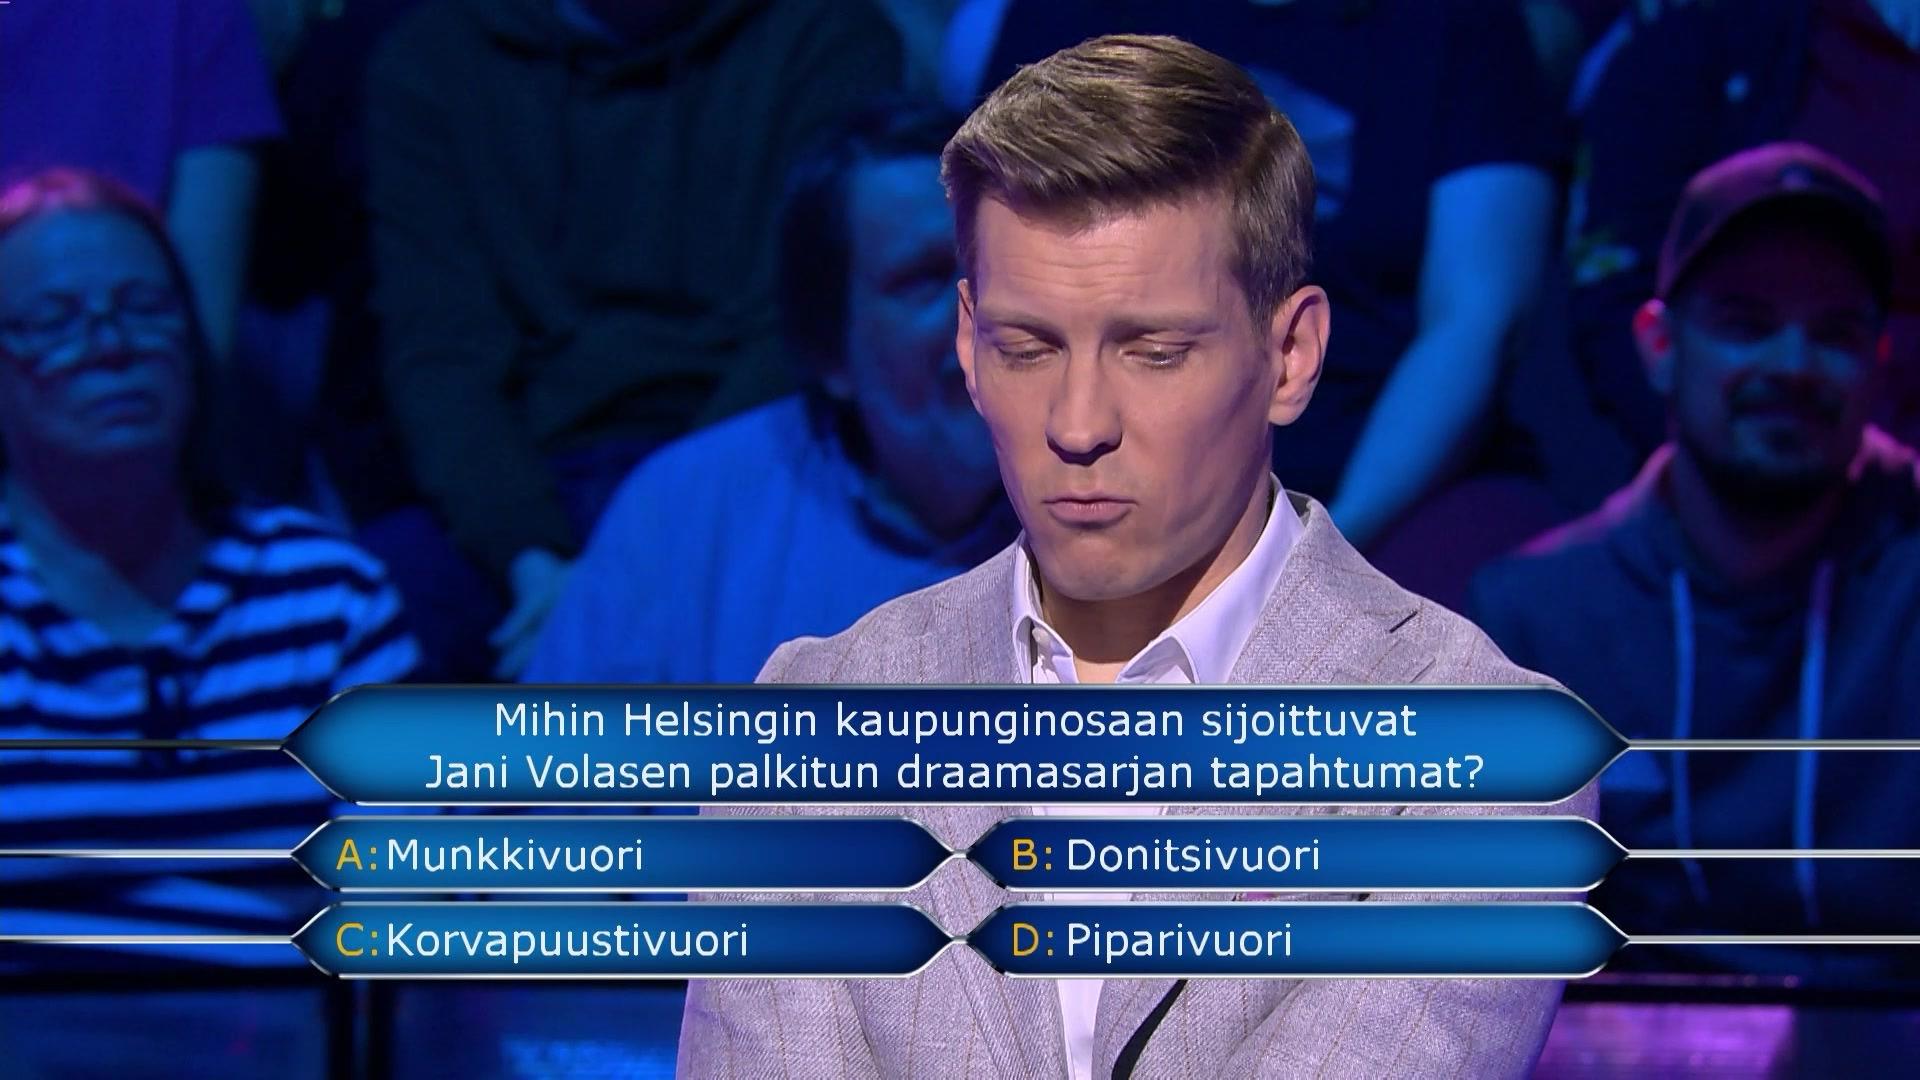 Antti heittää härskin mielleyhtymän Haluatko miljonääriksi? -ohjelmassa – tietäisitkö sinä oikean vastauksen?